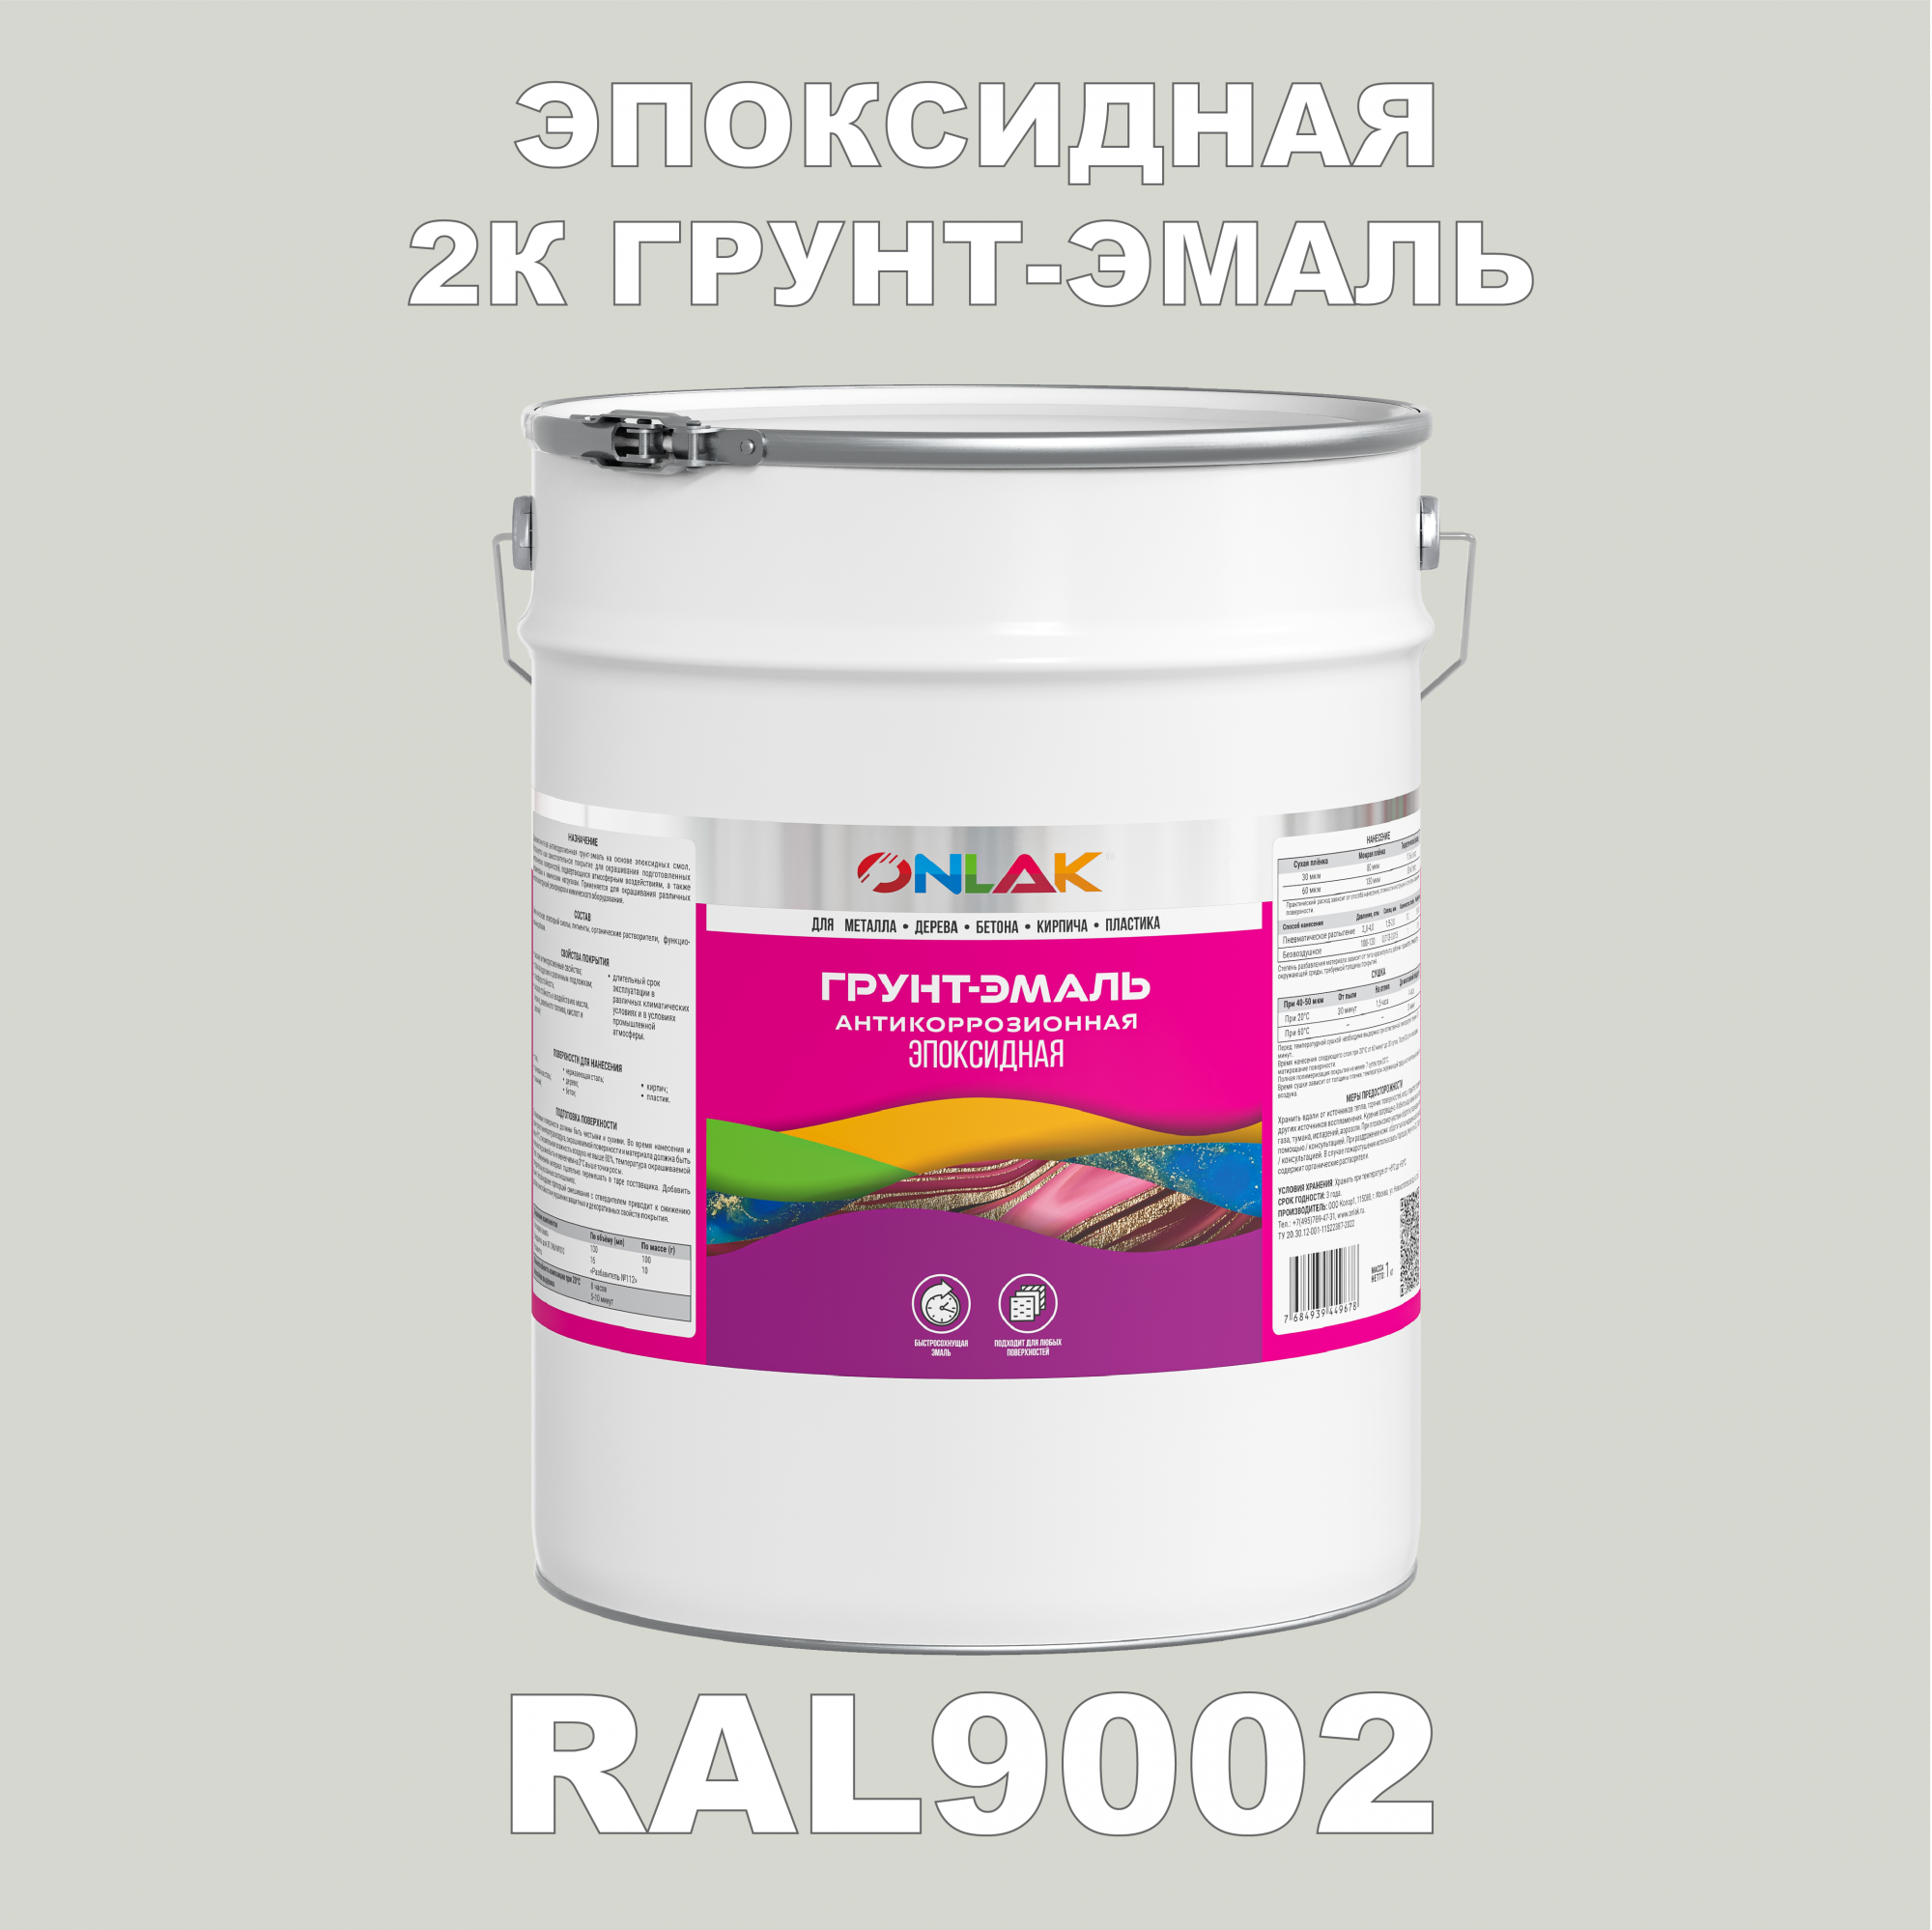 Грунт-эмаль ONLAK Эпоксидная 2К RAL9002 по металлу, ржавчине, дереву, бетону